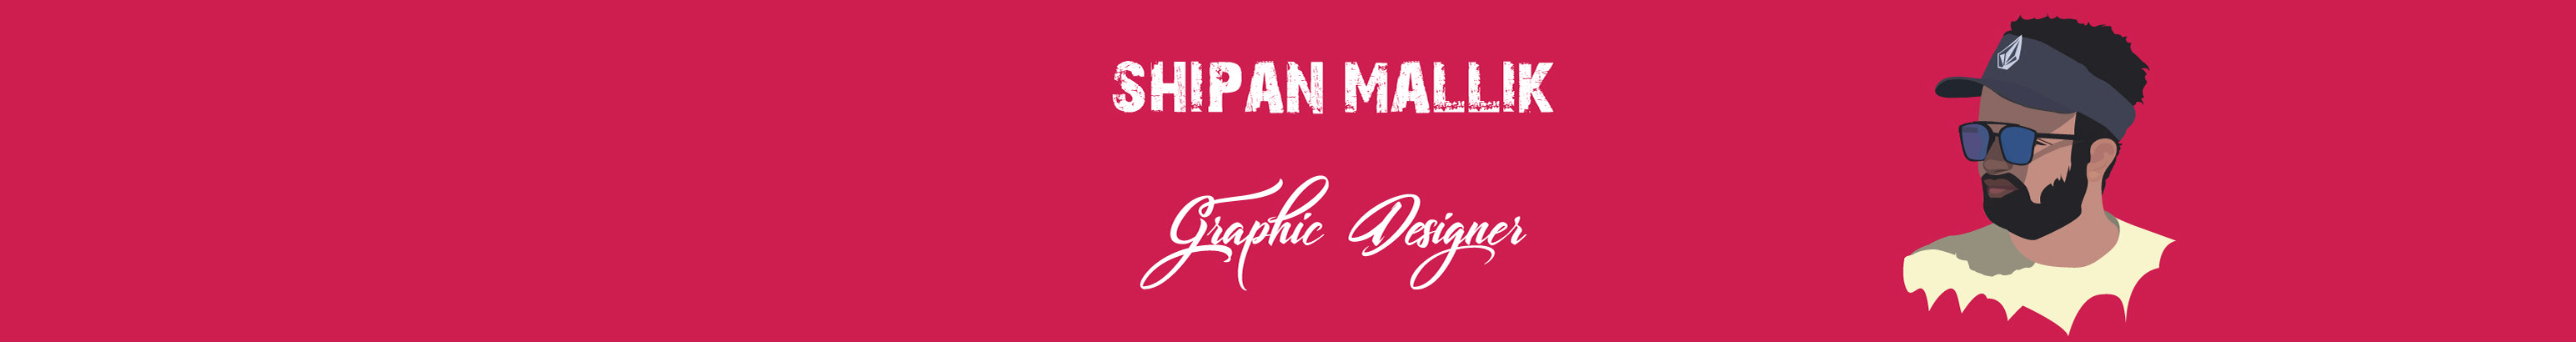 Shipan Mallik's profile banner